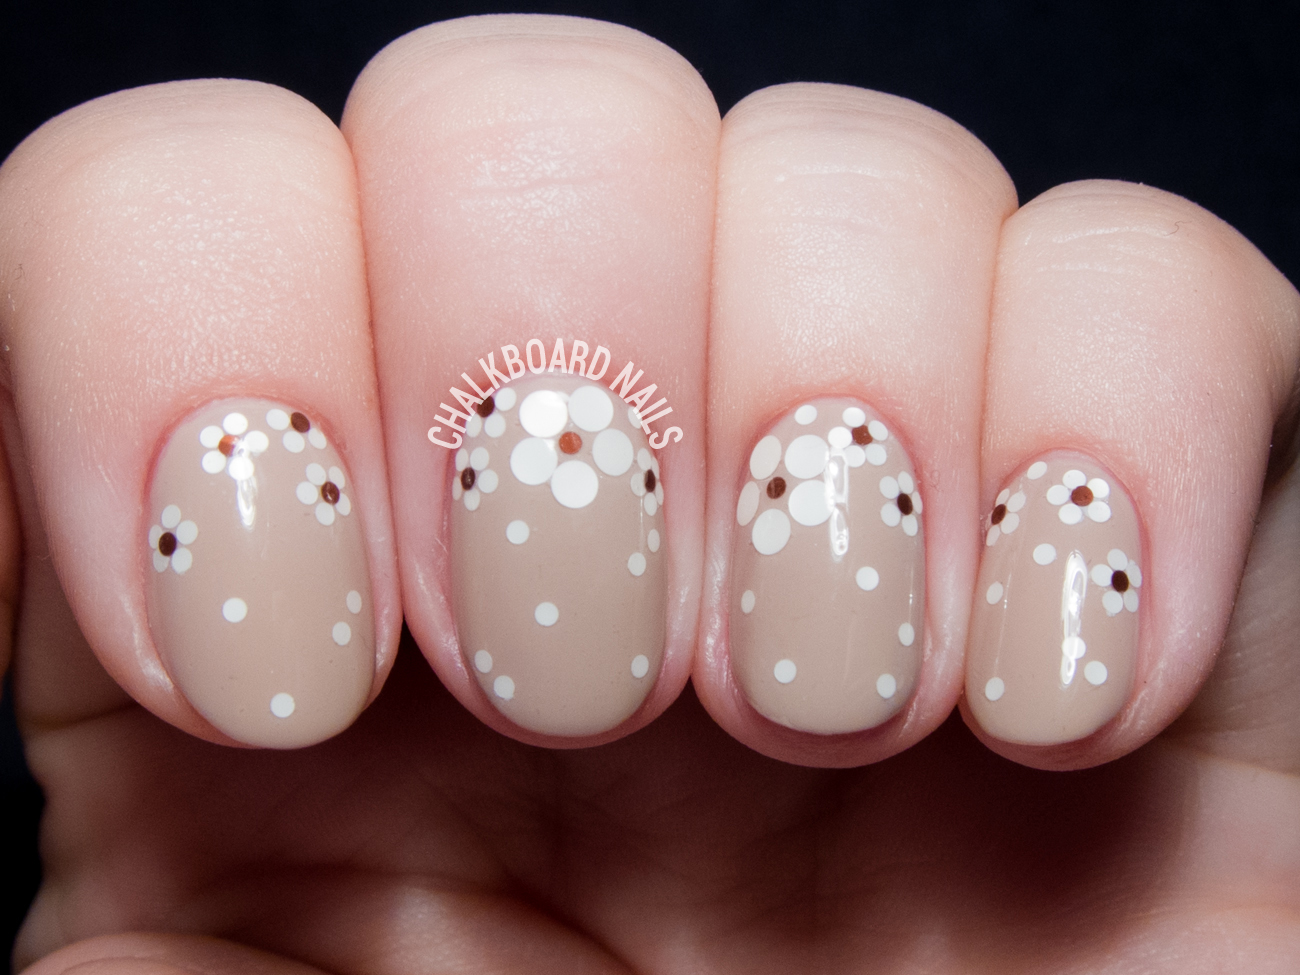 Glitter floral nails @chalkboardnails